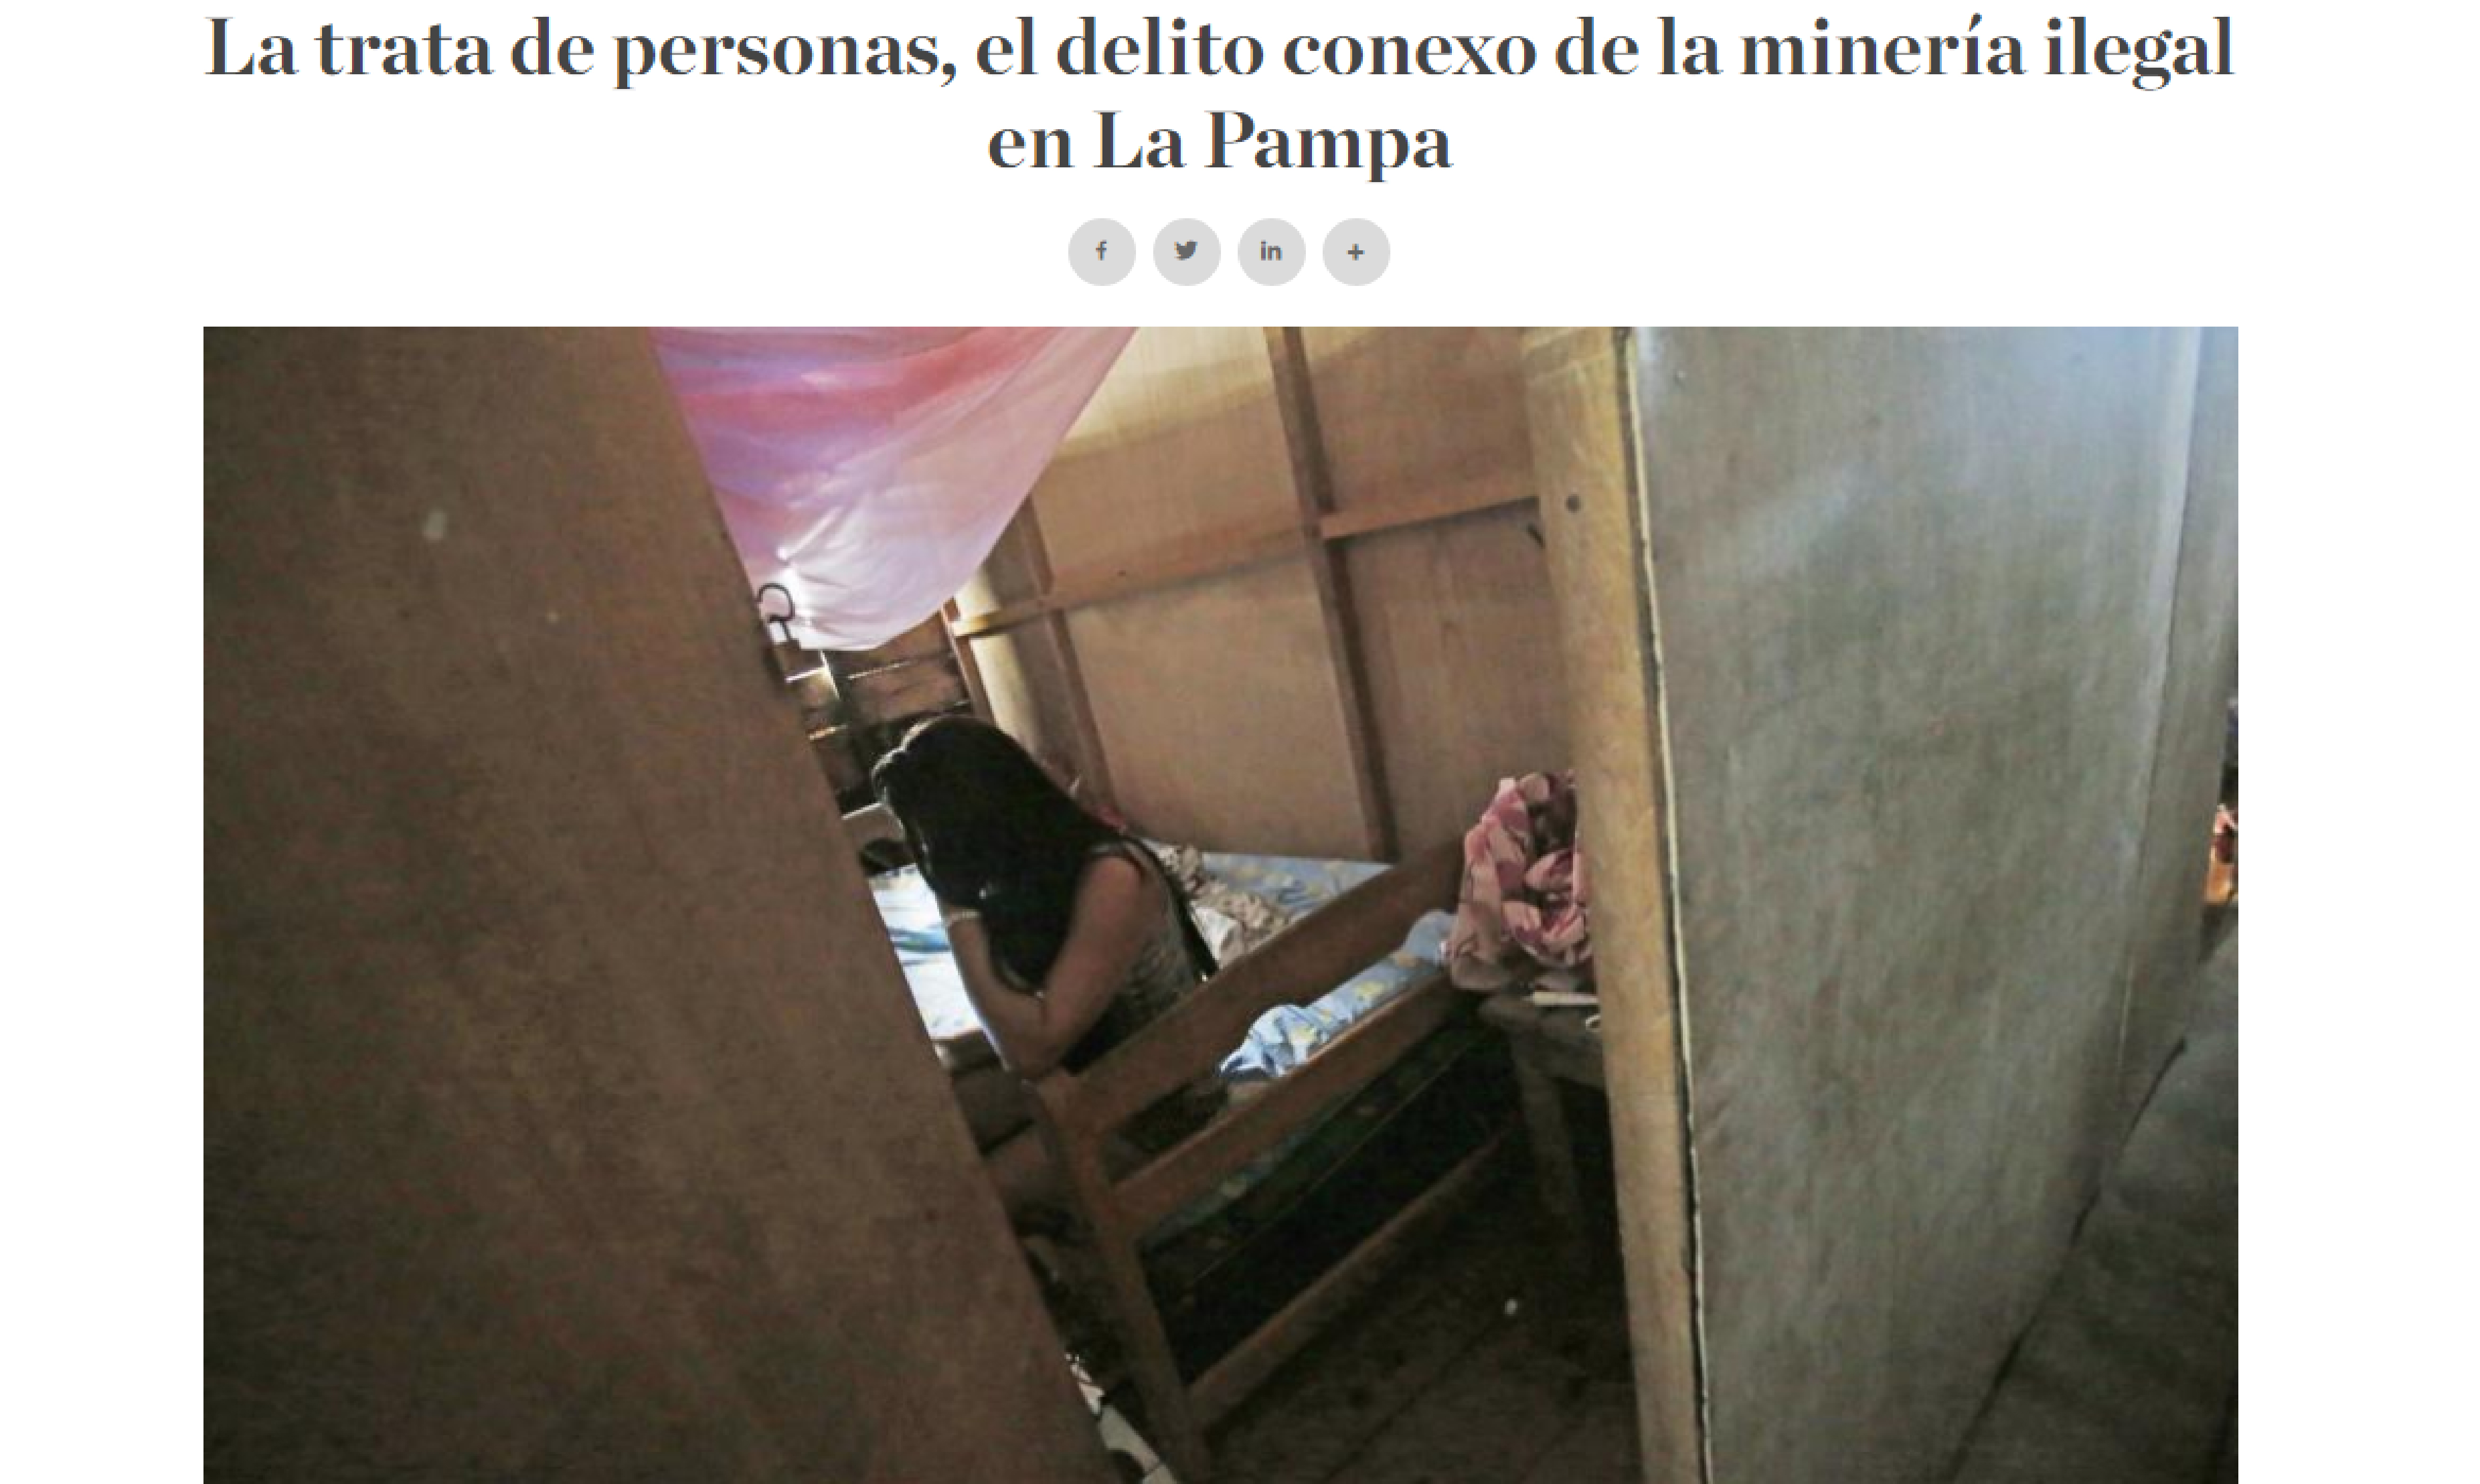 La trata de personas, el delito conexo de la minería ilegal en La Pampa